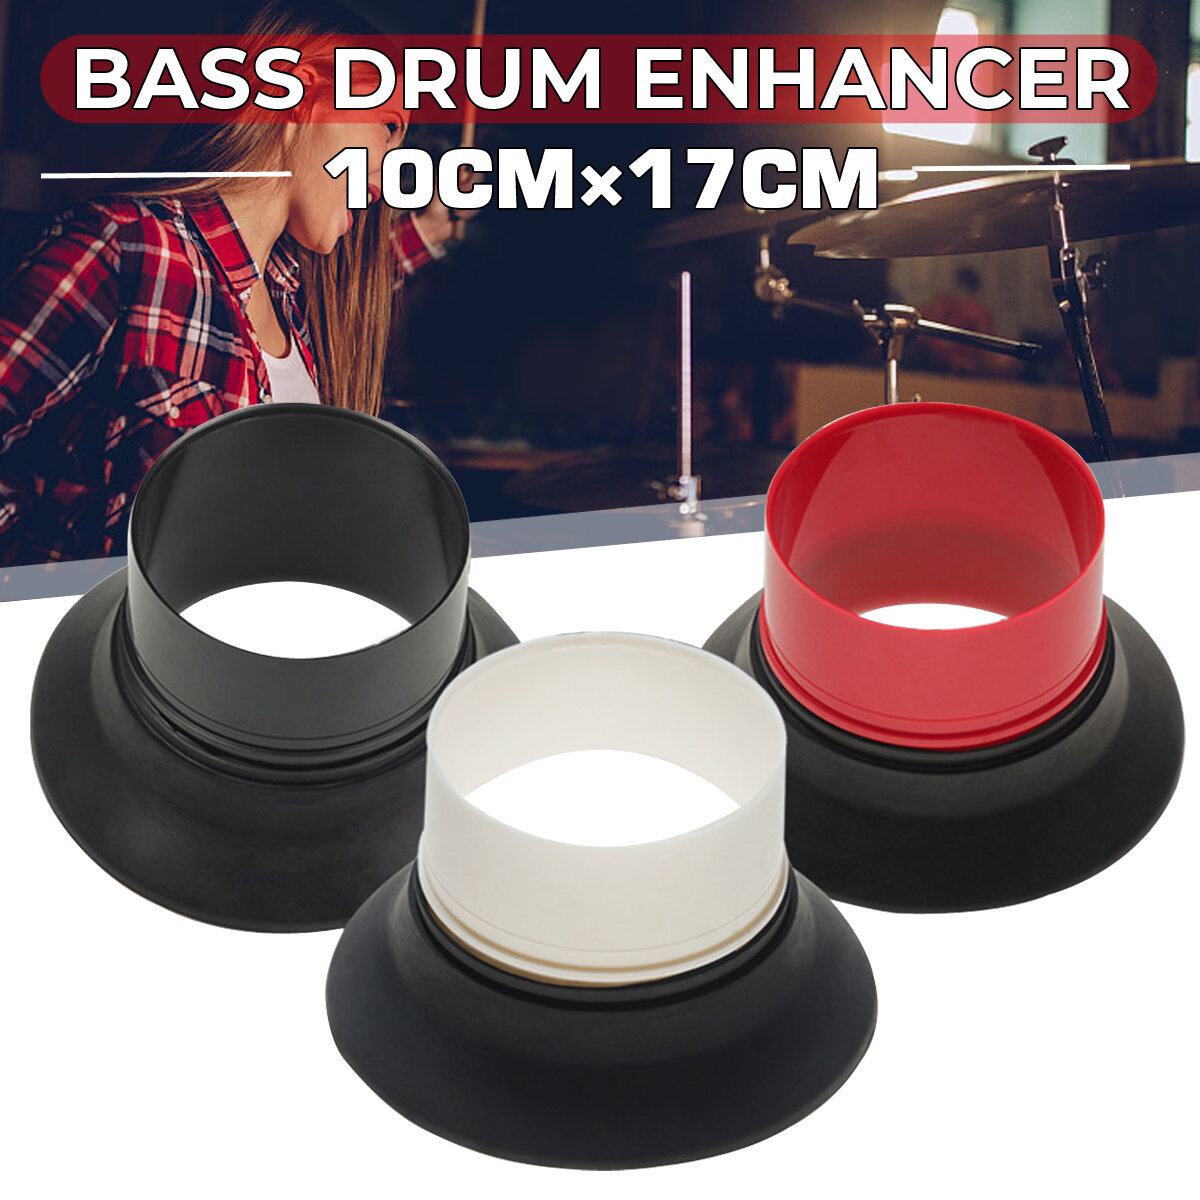 Bass Drum Enhancer Met Bass Drum Port Hole Protector Voor Drumkit Set Percussie Instrument Onderdele